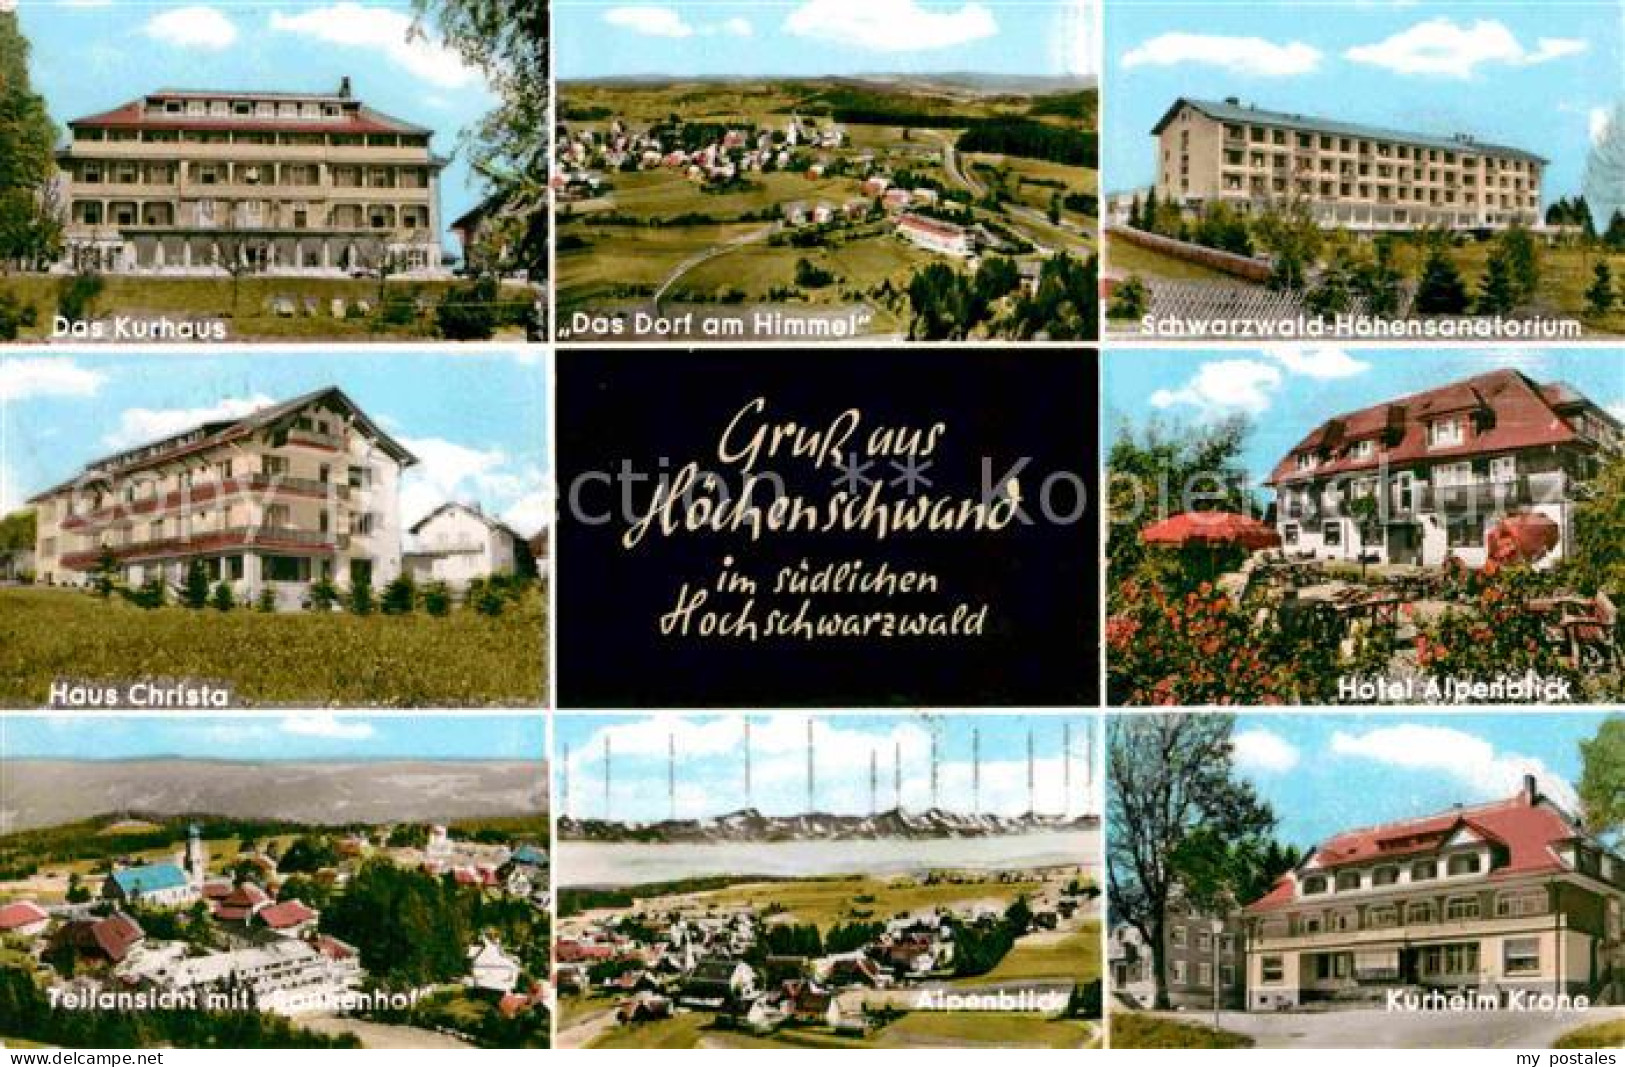 72617677 Hoechenschwand Schwarzwald-Hoehensanatorium Kurheim Krone Haus Christa  - Höchenschwand